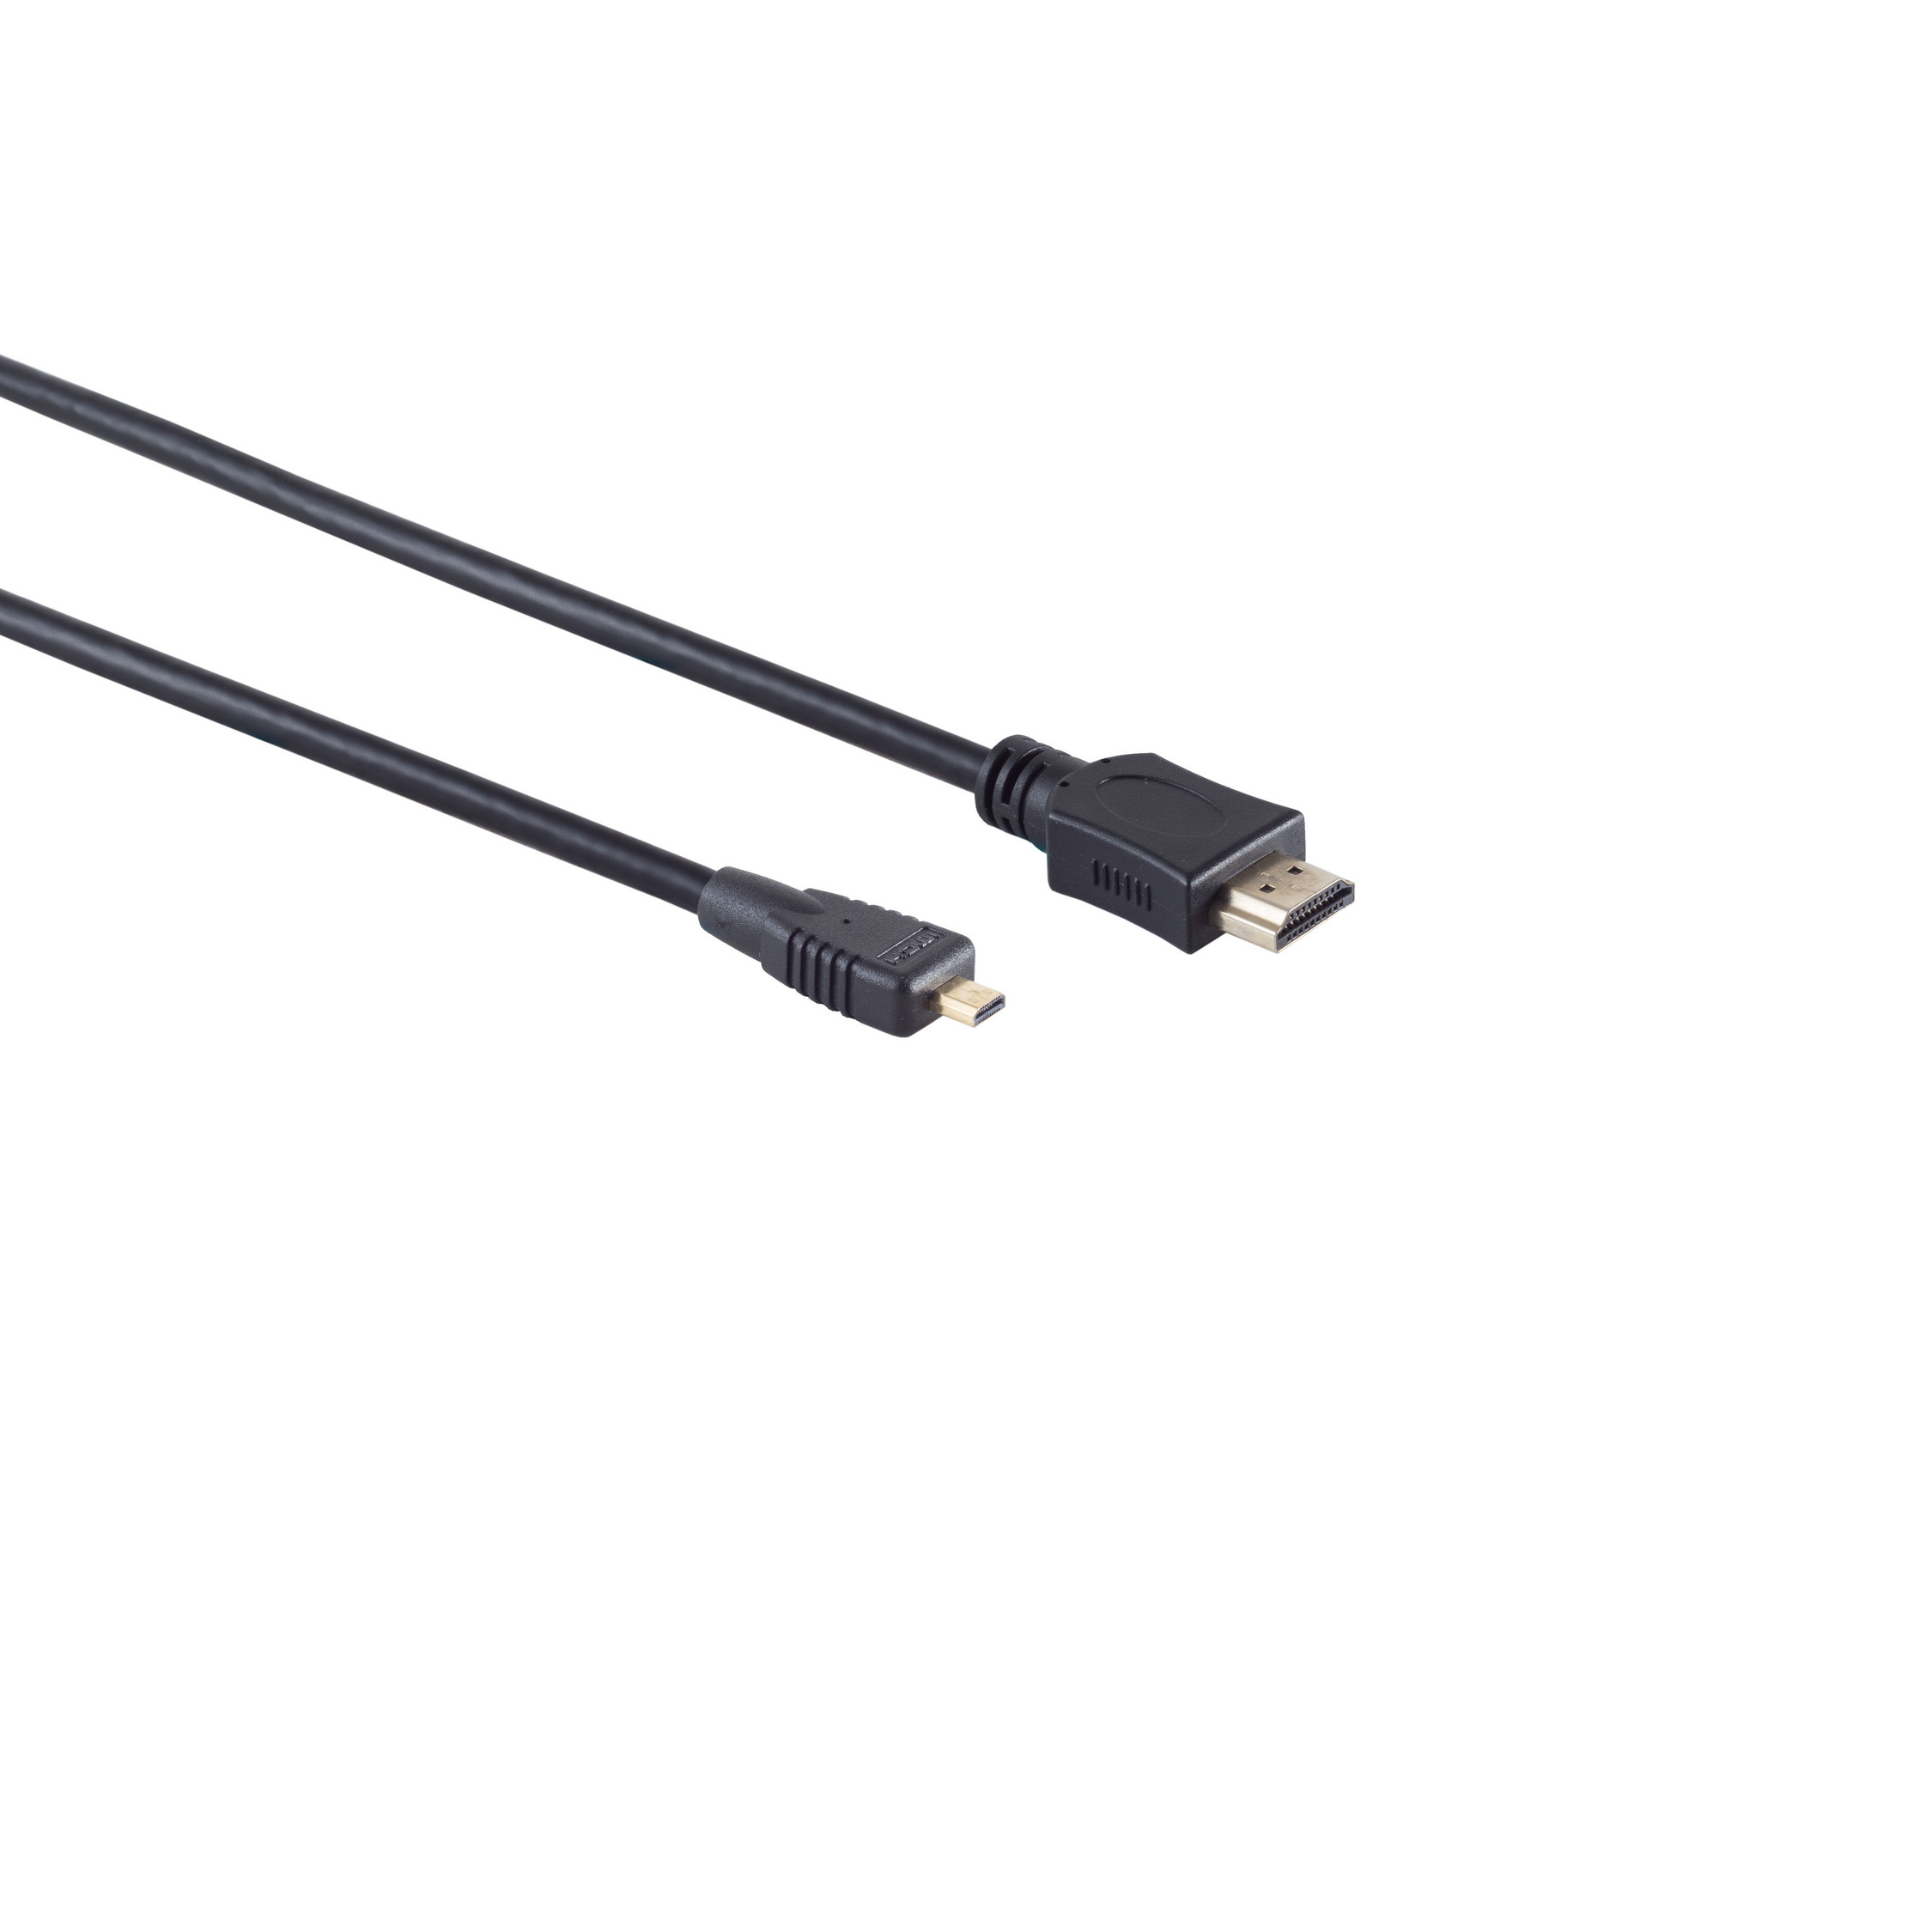 HDMI 0,5m micro KABELBUDE A-Stecker/HDMI Kabel verg D-Stecker HEAC HDMI